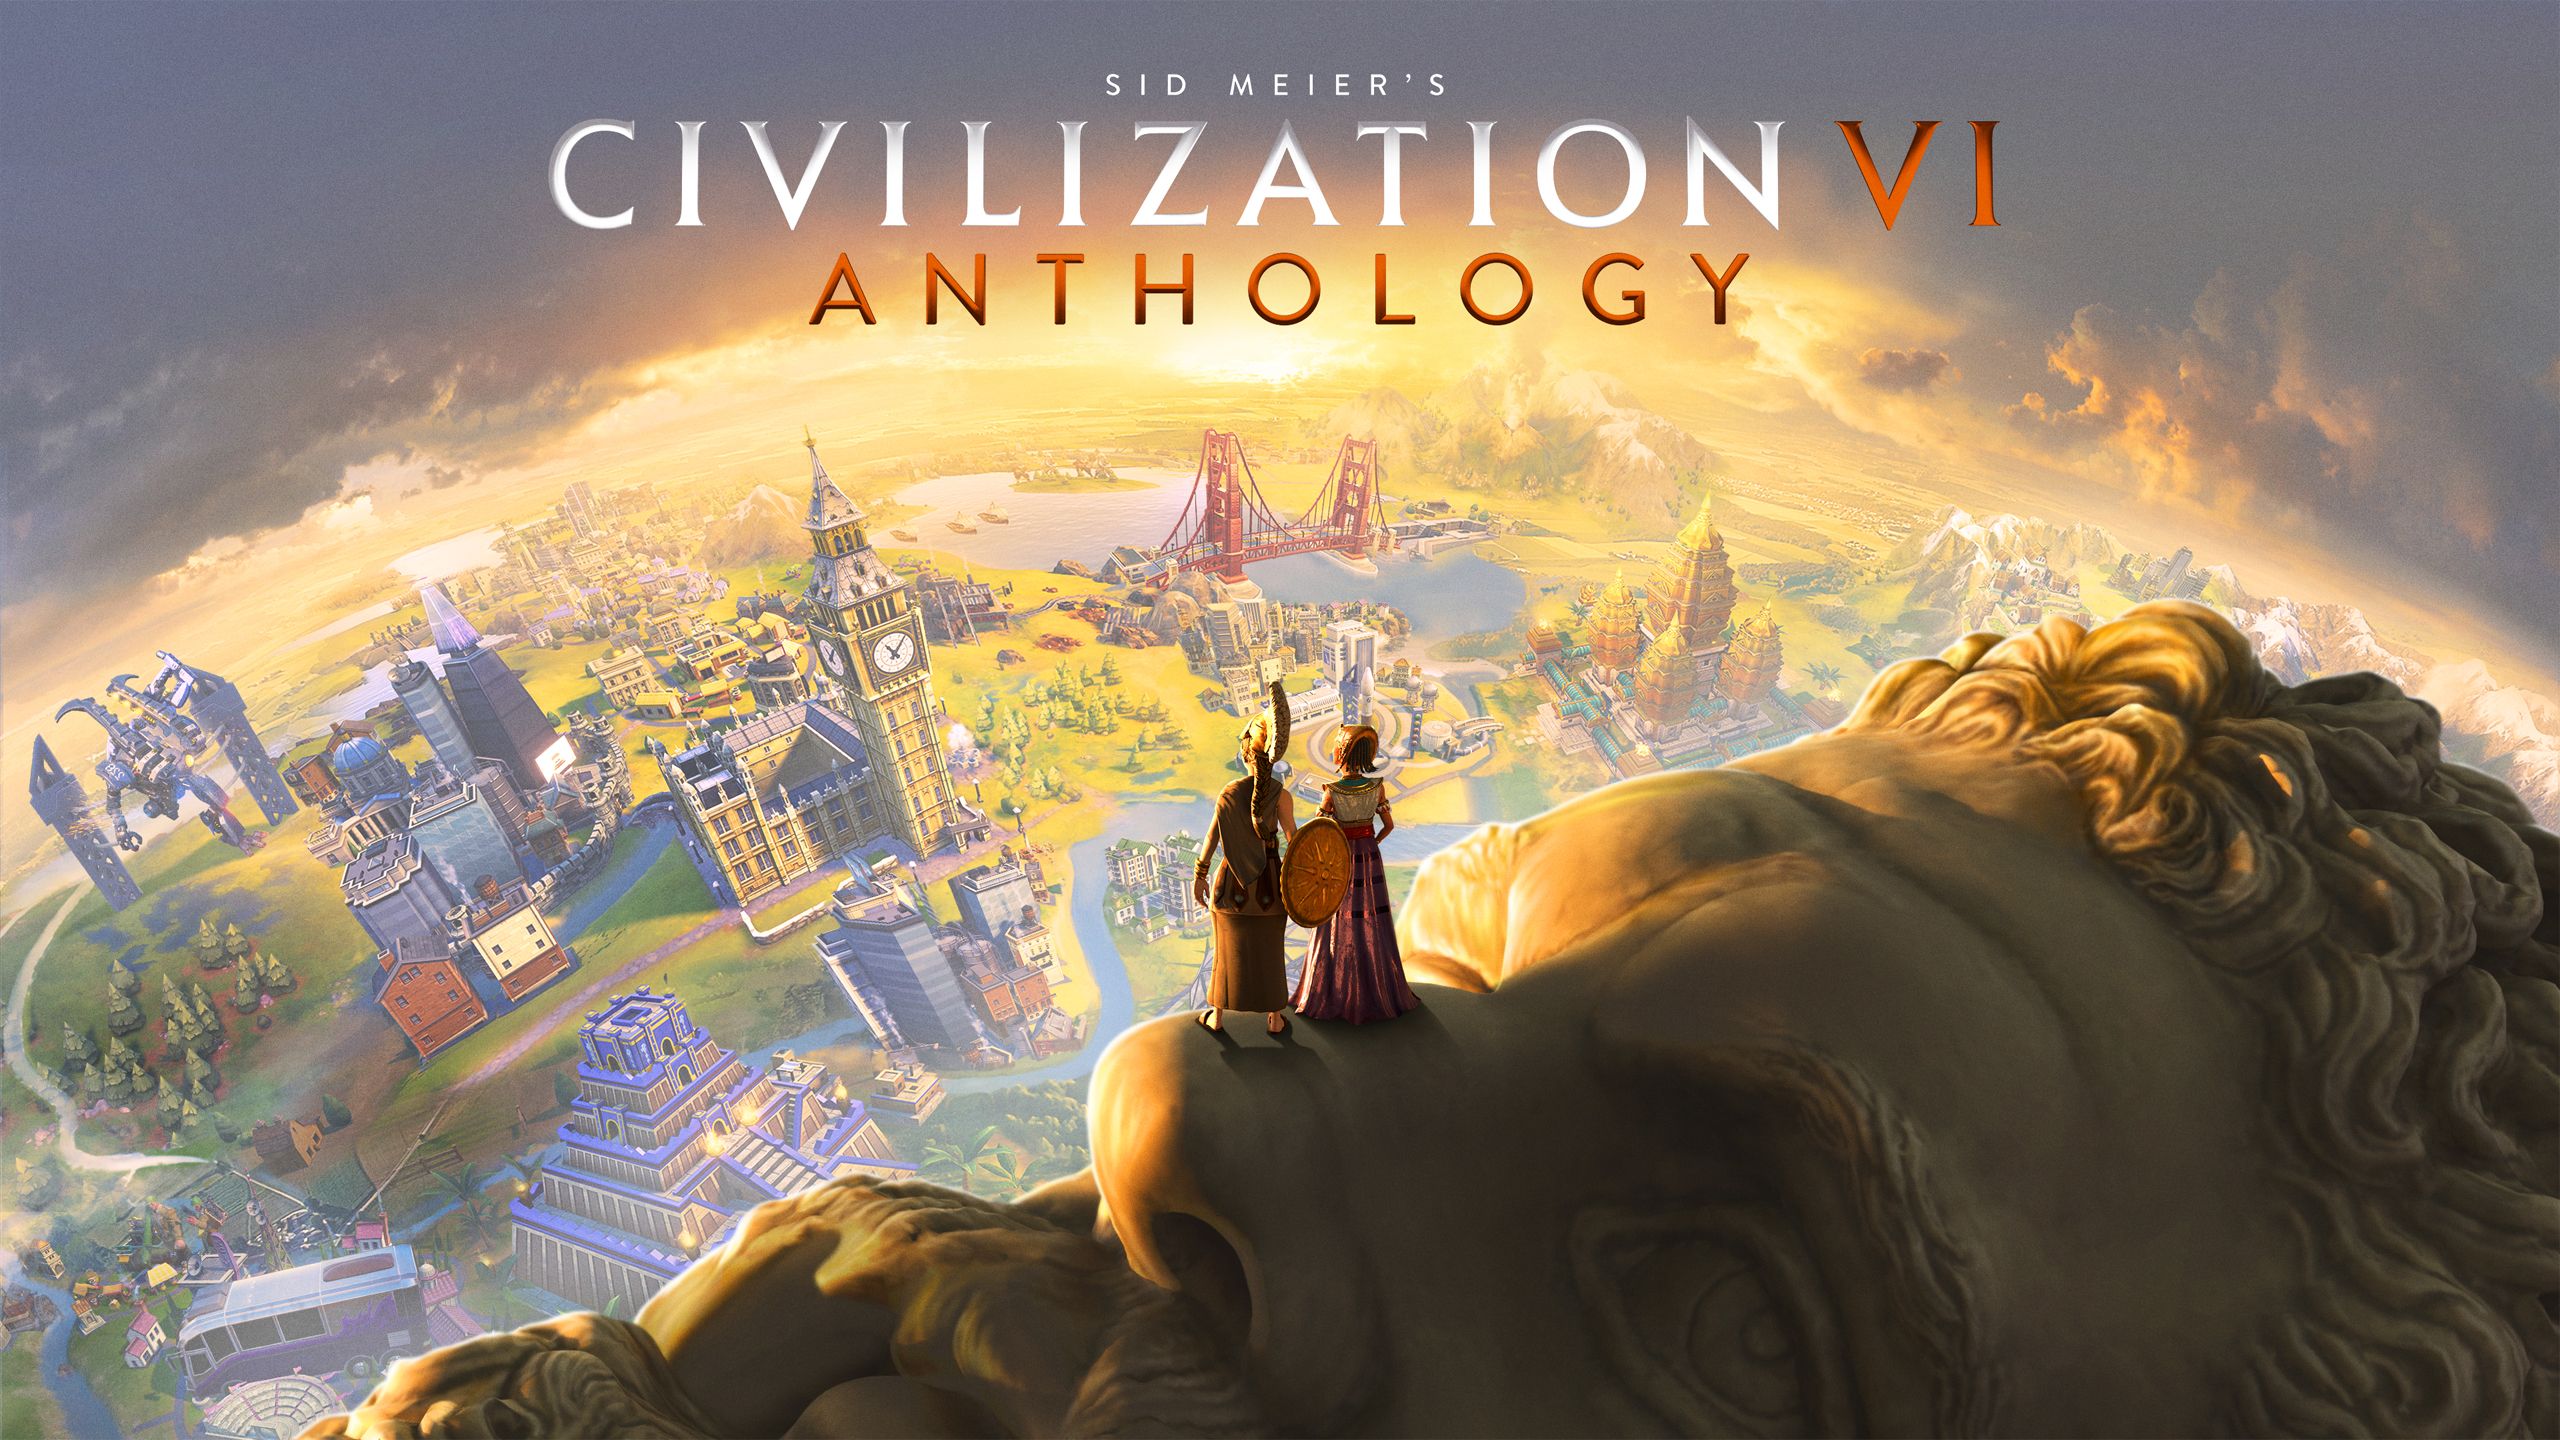 civilization vi soundtrack